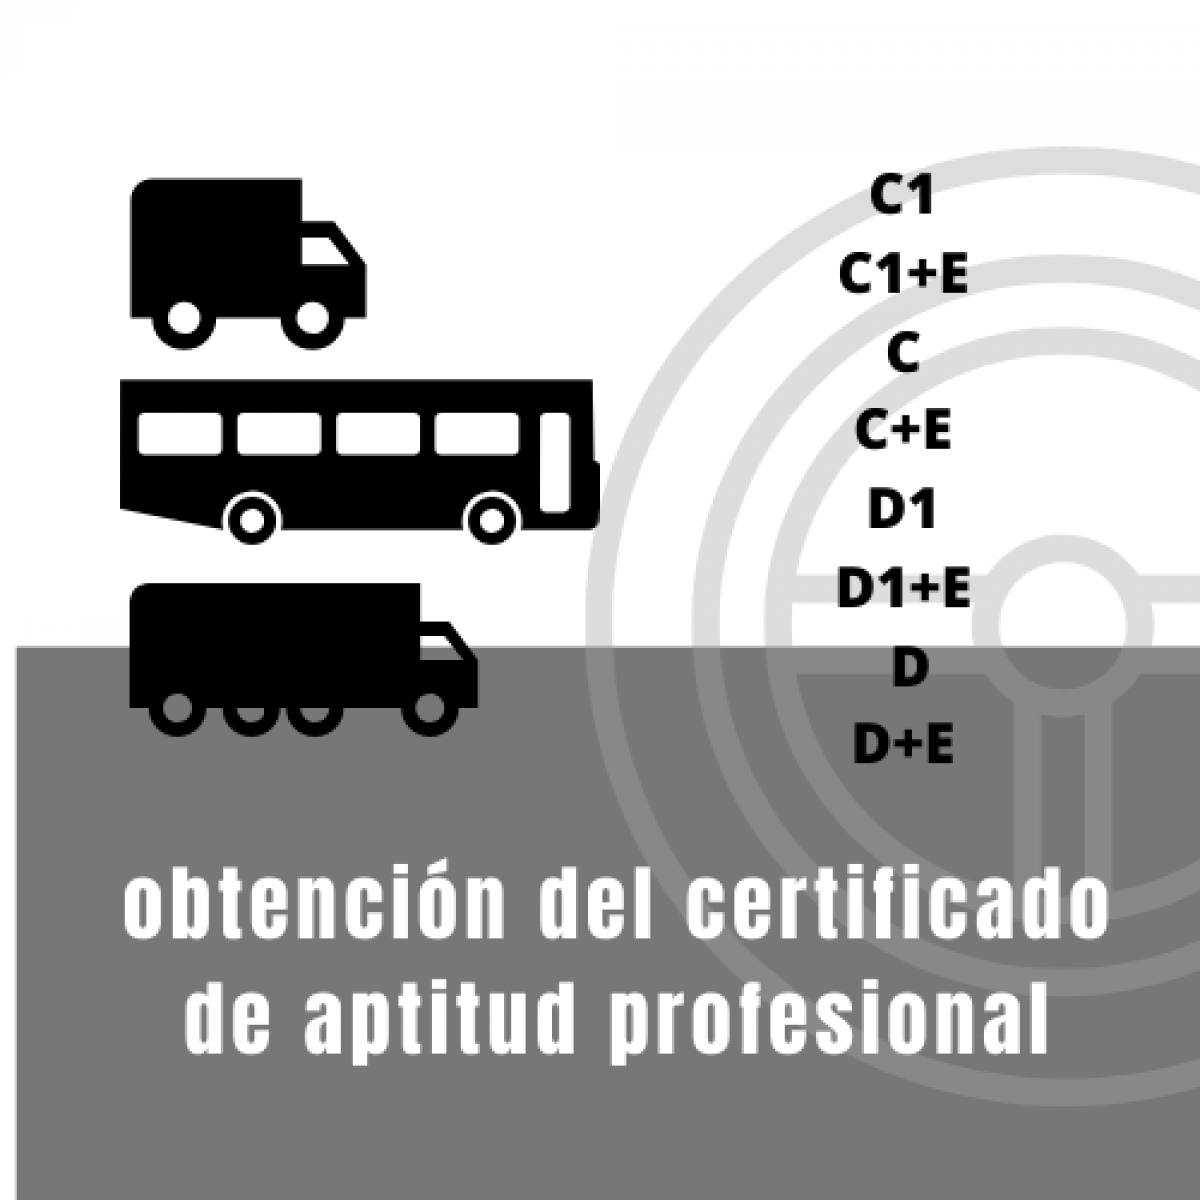 obtención certificado de aptitud profesional